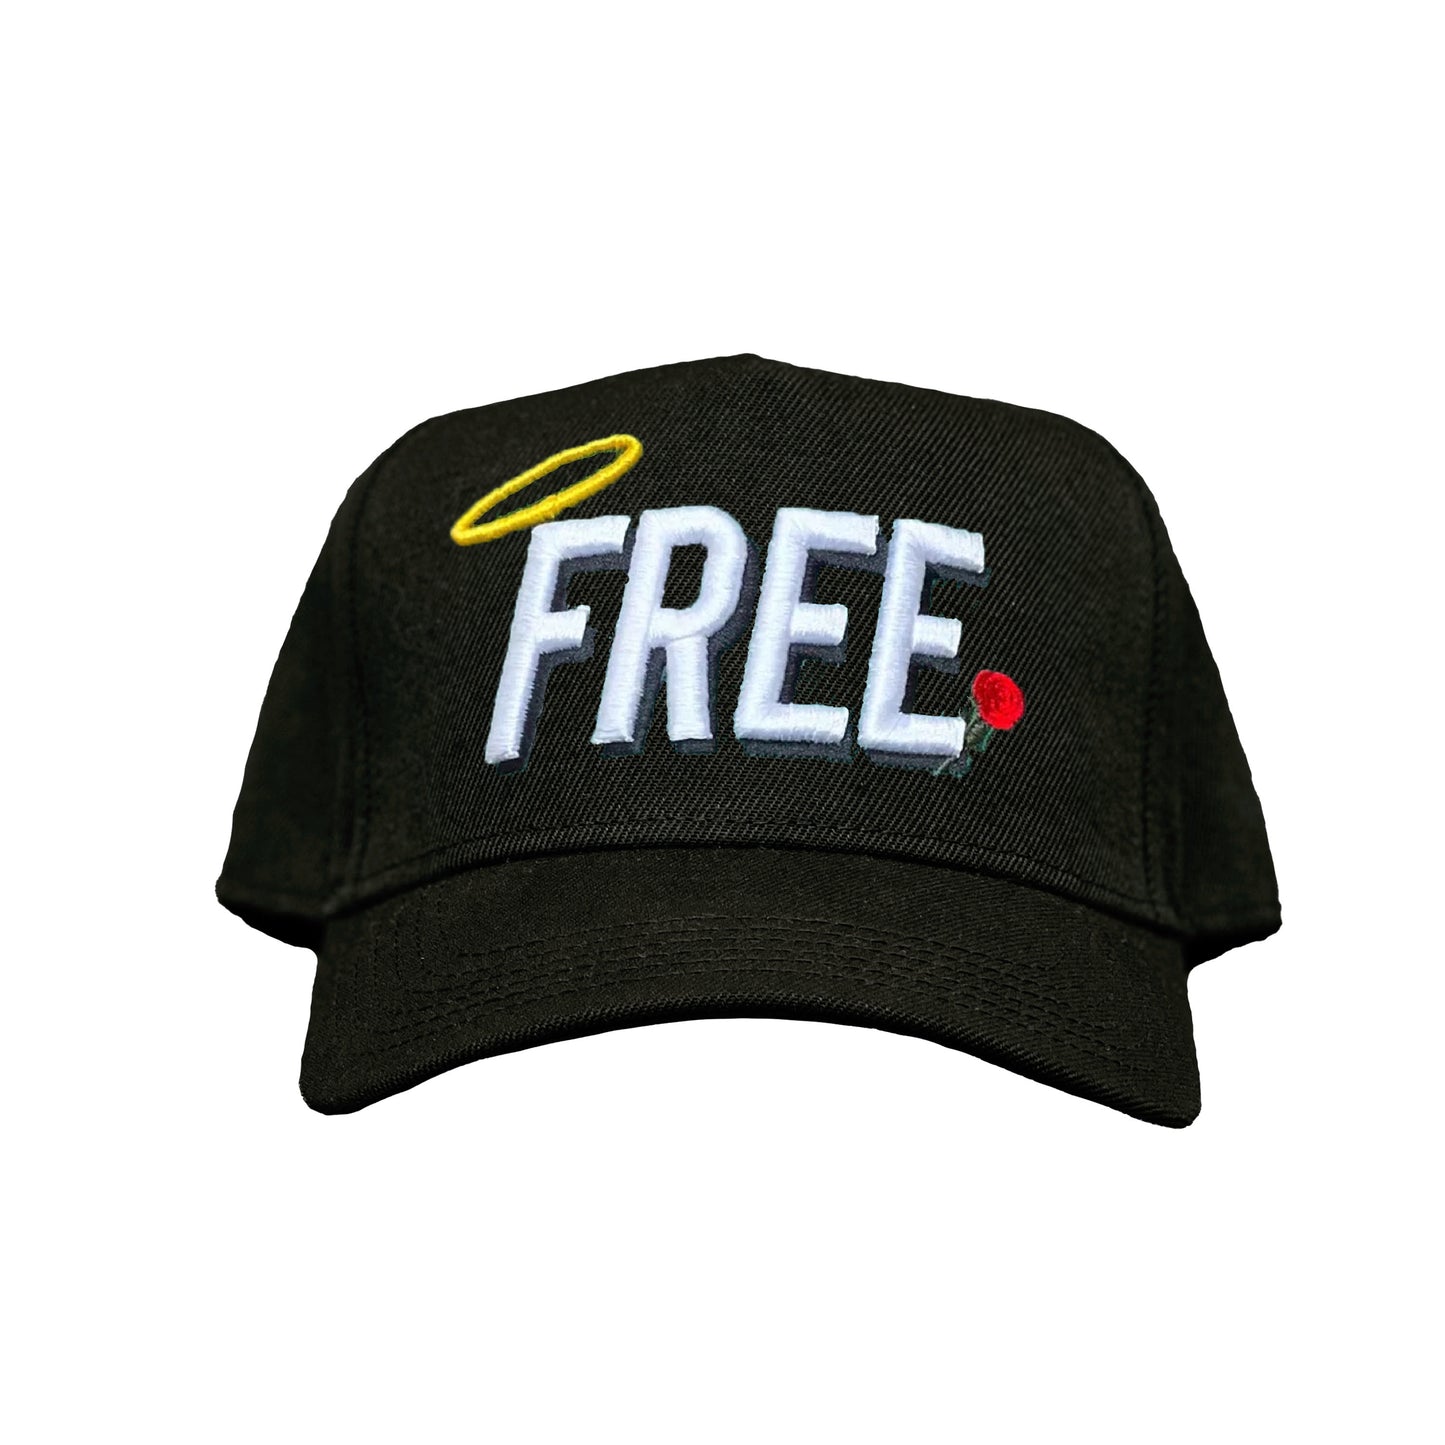 SBSD So "FREE" cap (black)